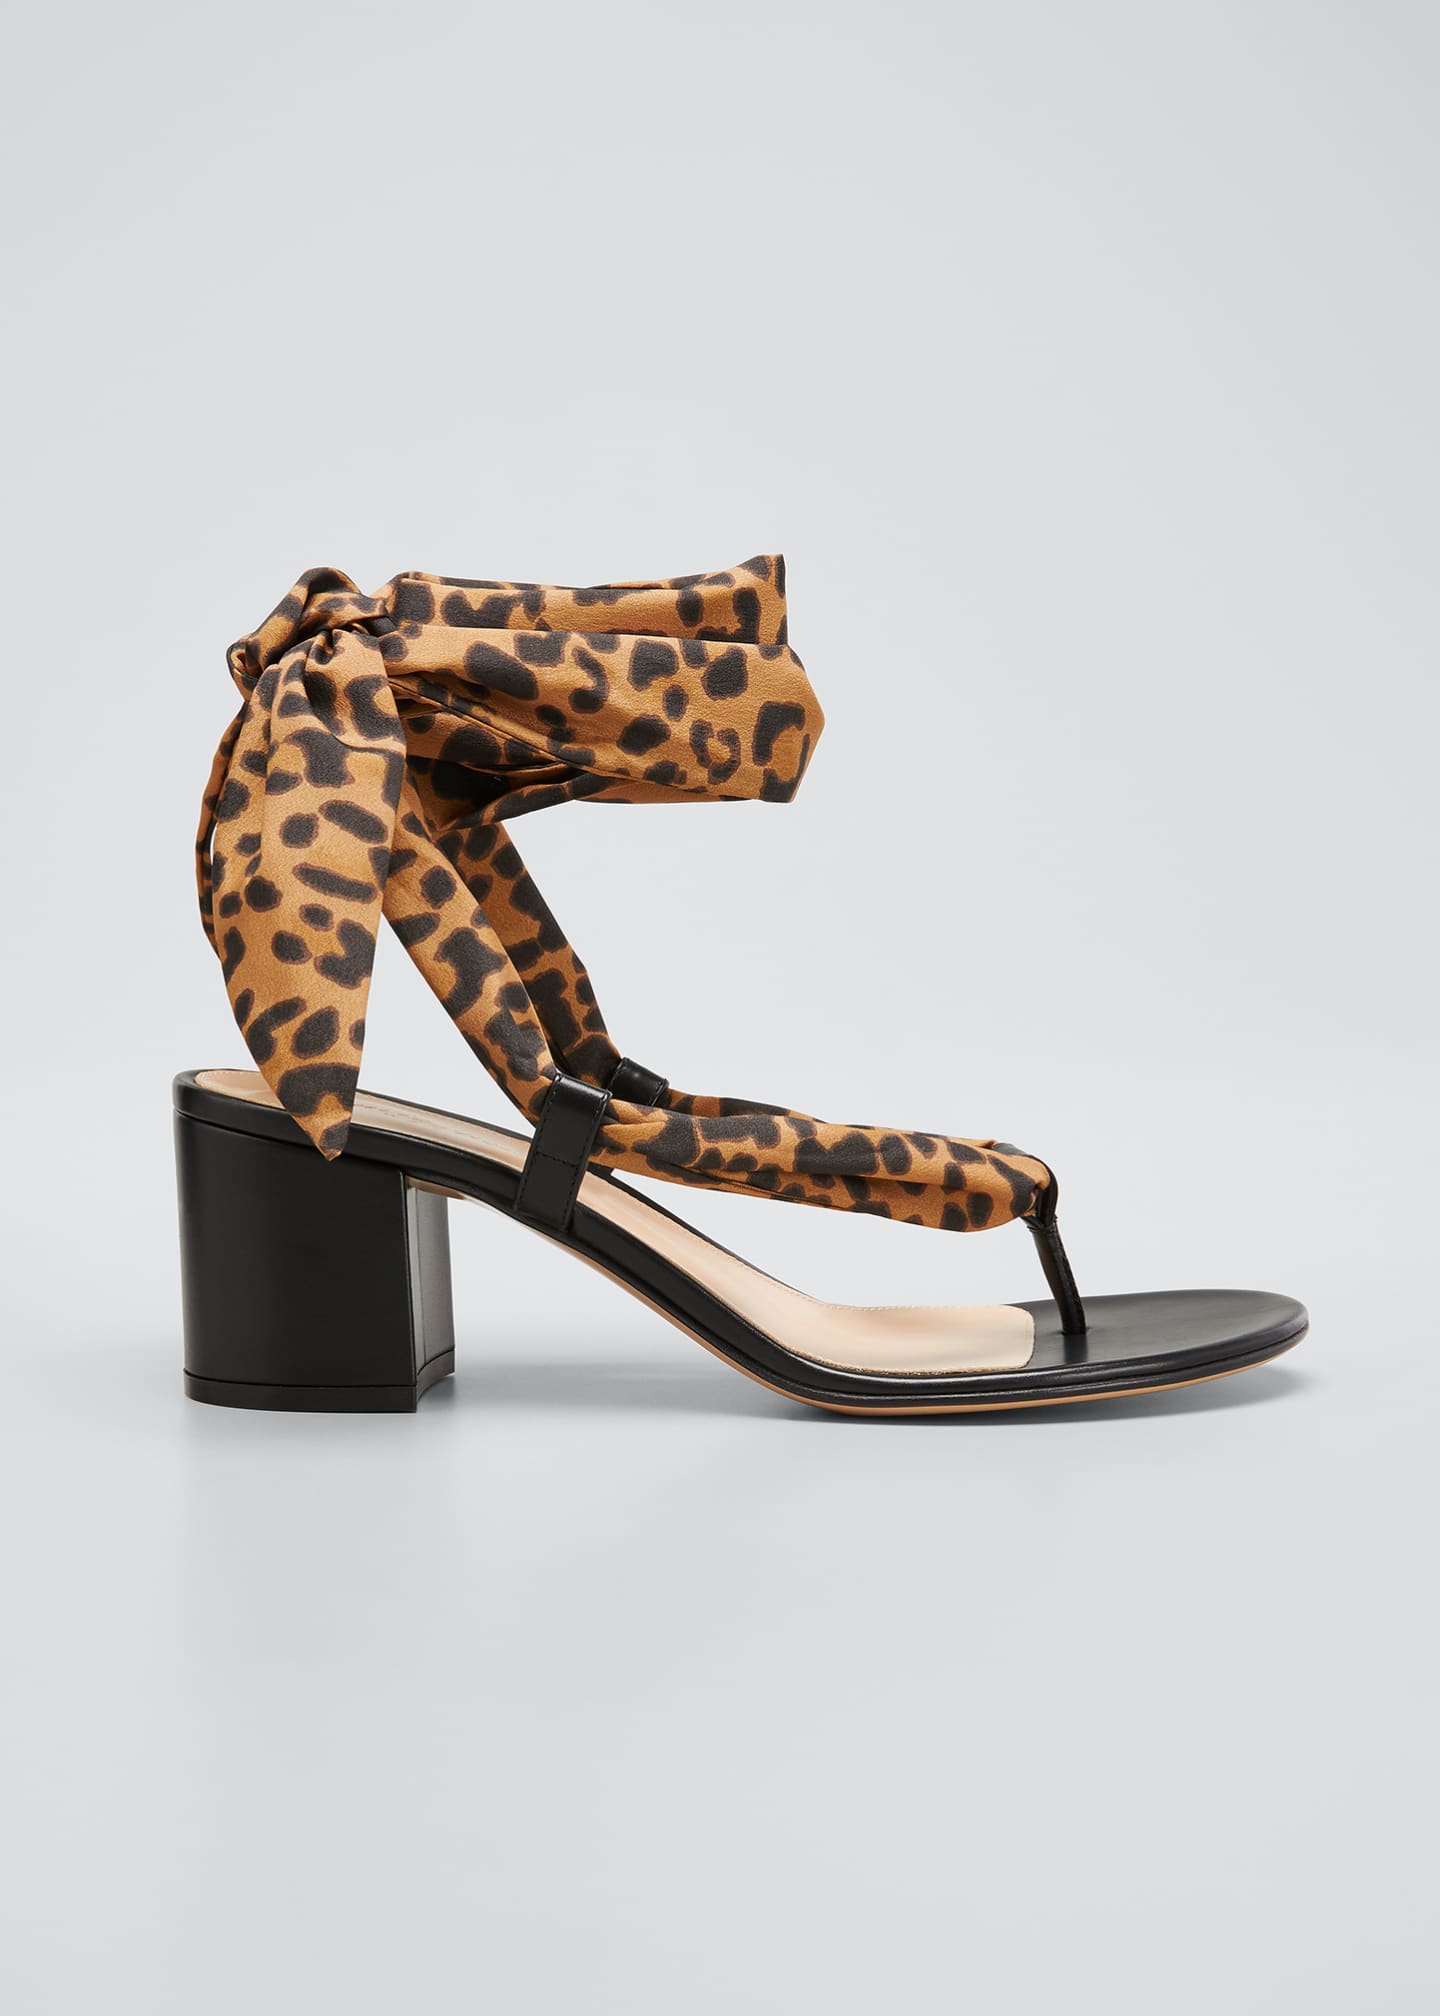 gianvito rossi leopard sandals